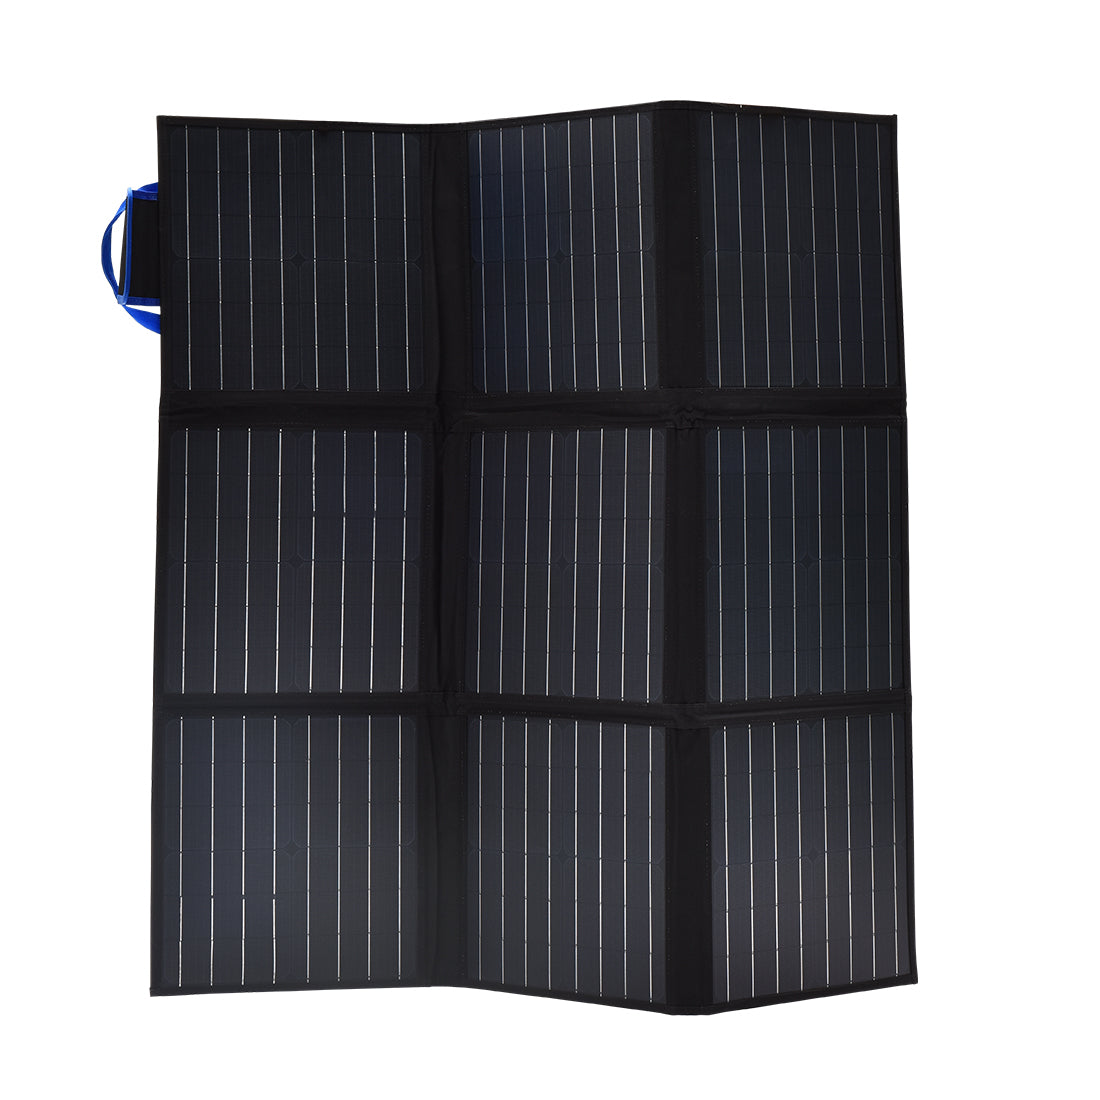 MaxRay 12V 250W Folding Solar Panel Blanket Solar Mat Kit Mono Camping Power USB